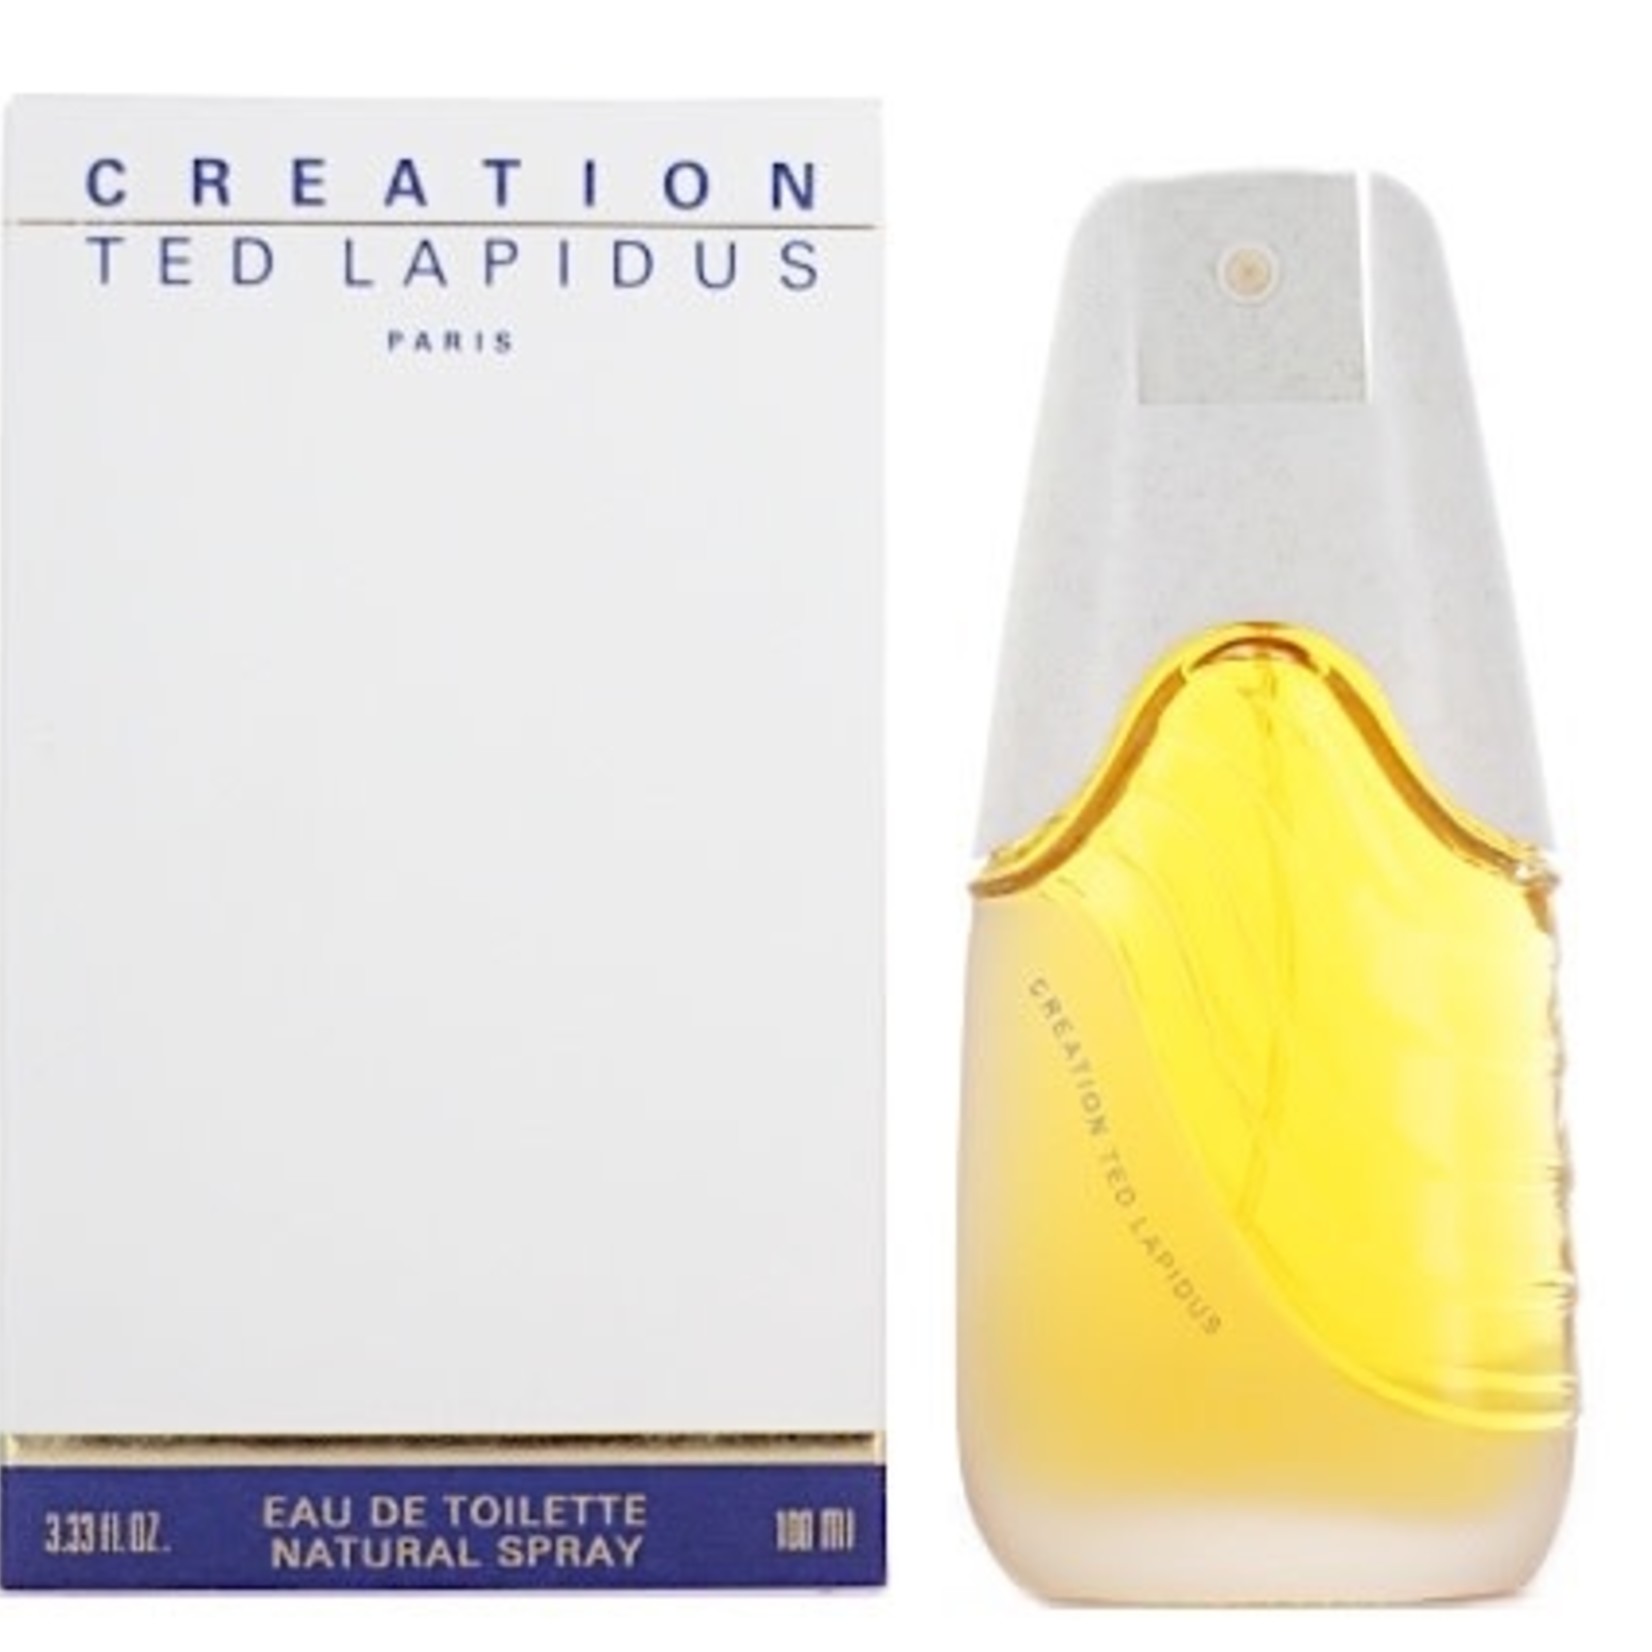 Ted Lapidus Creation Eau de Toilette